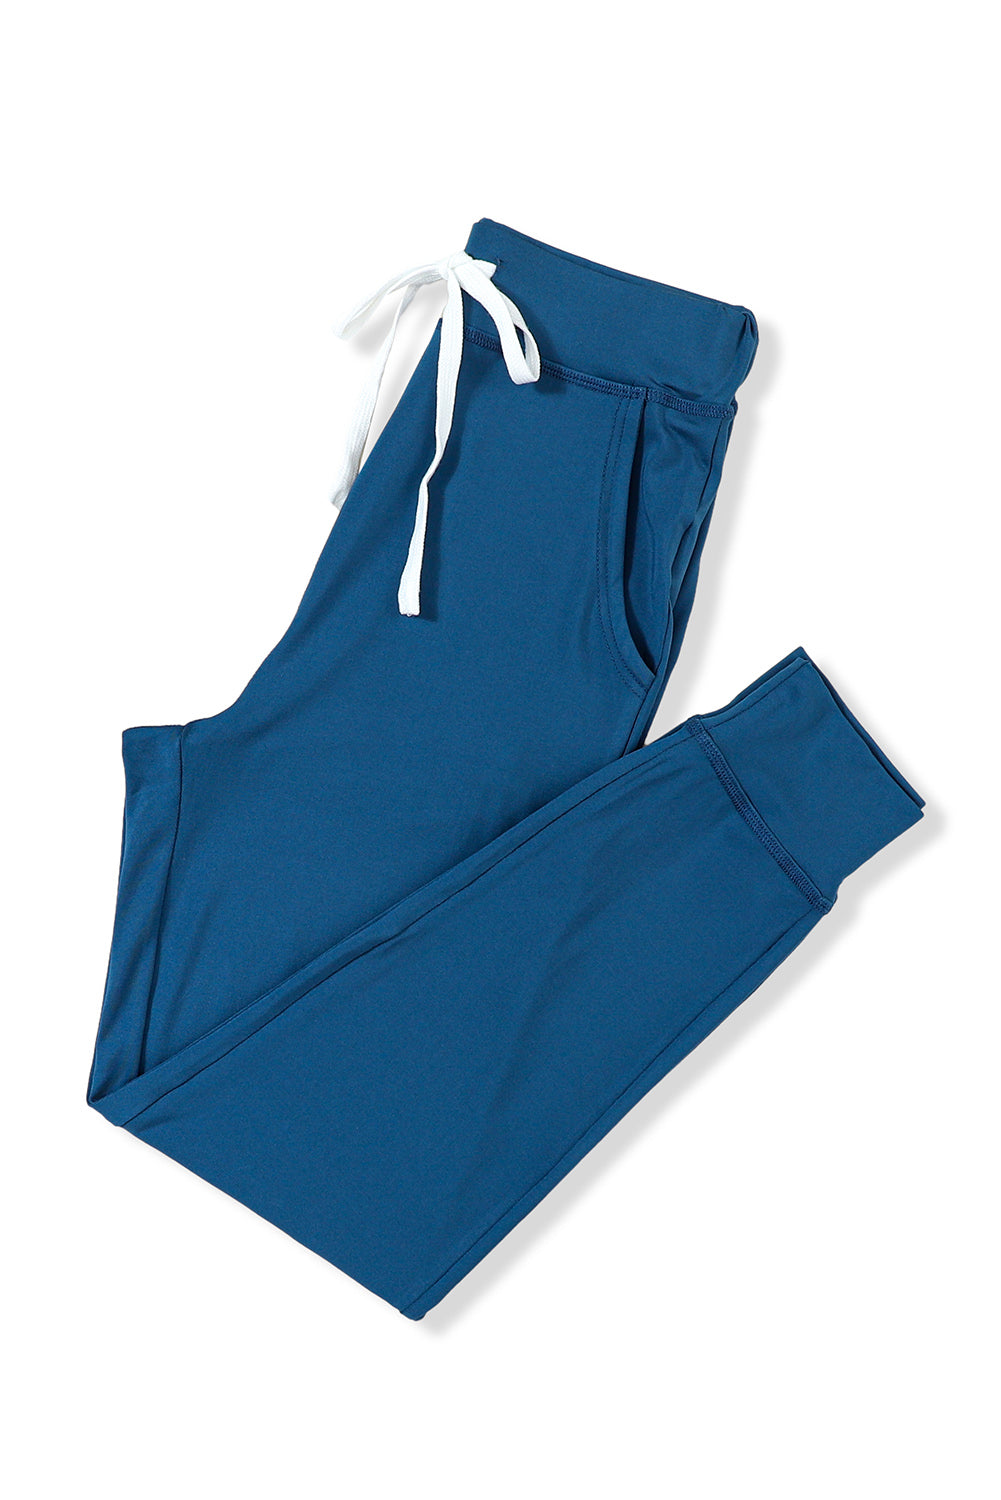 Marineblaue Jogginghose mit Kordelzug an der Taille und Taschen